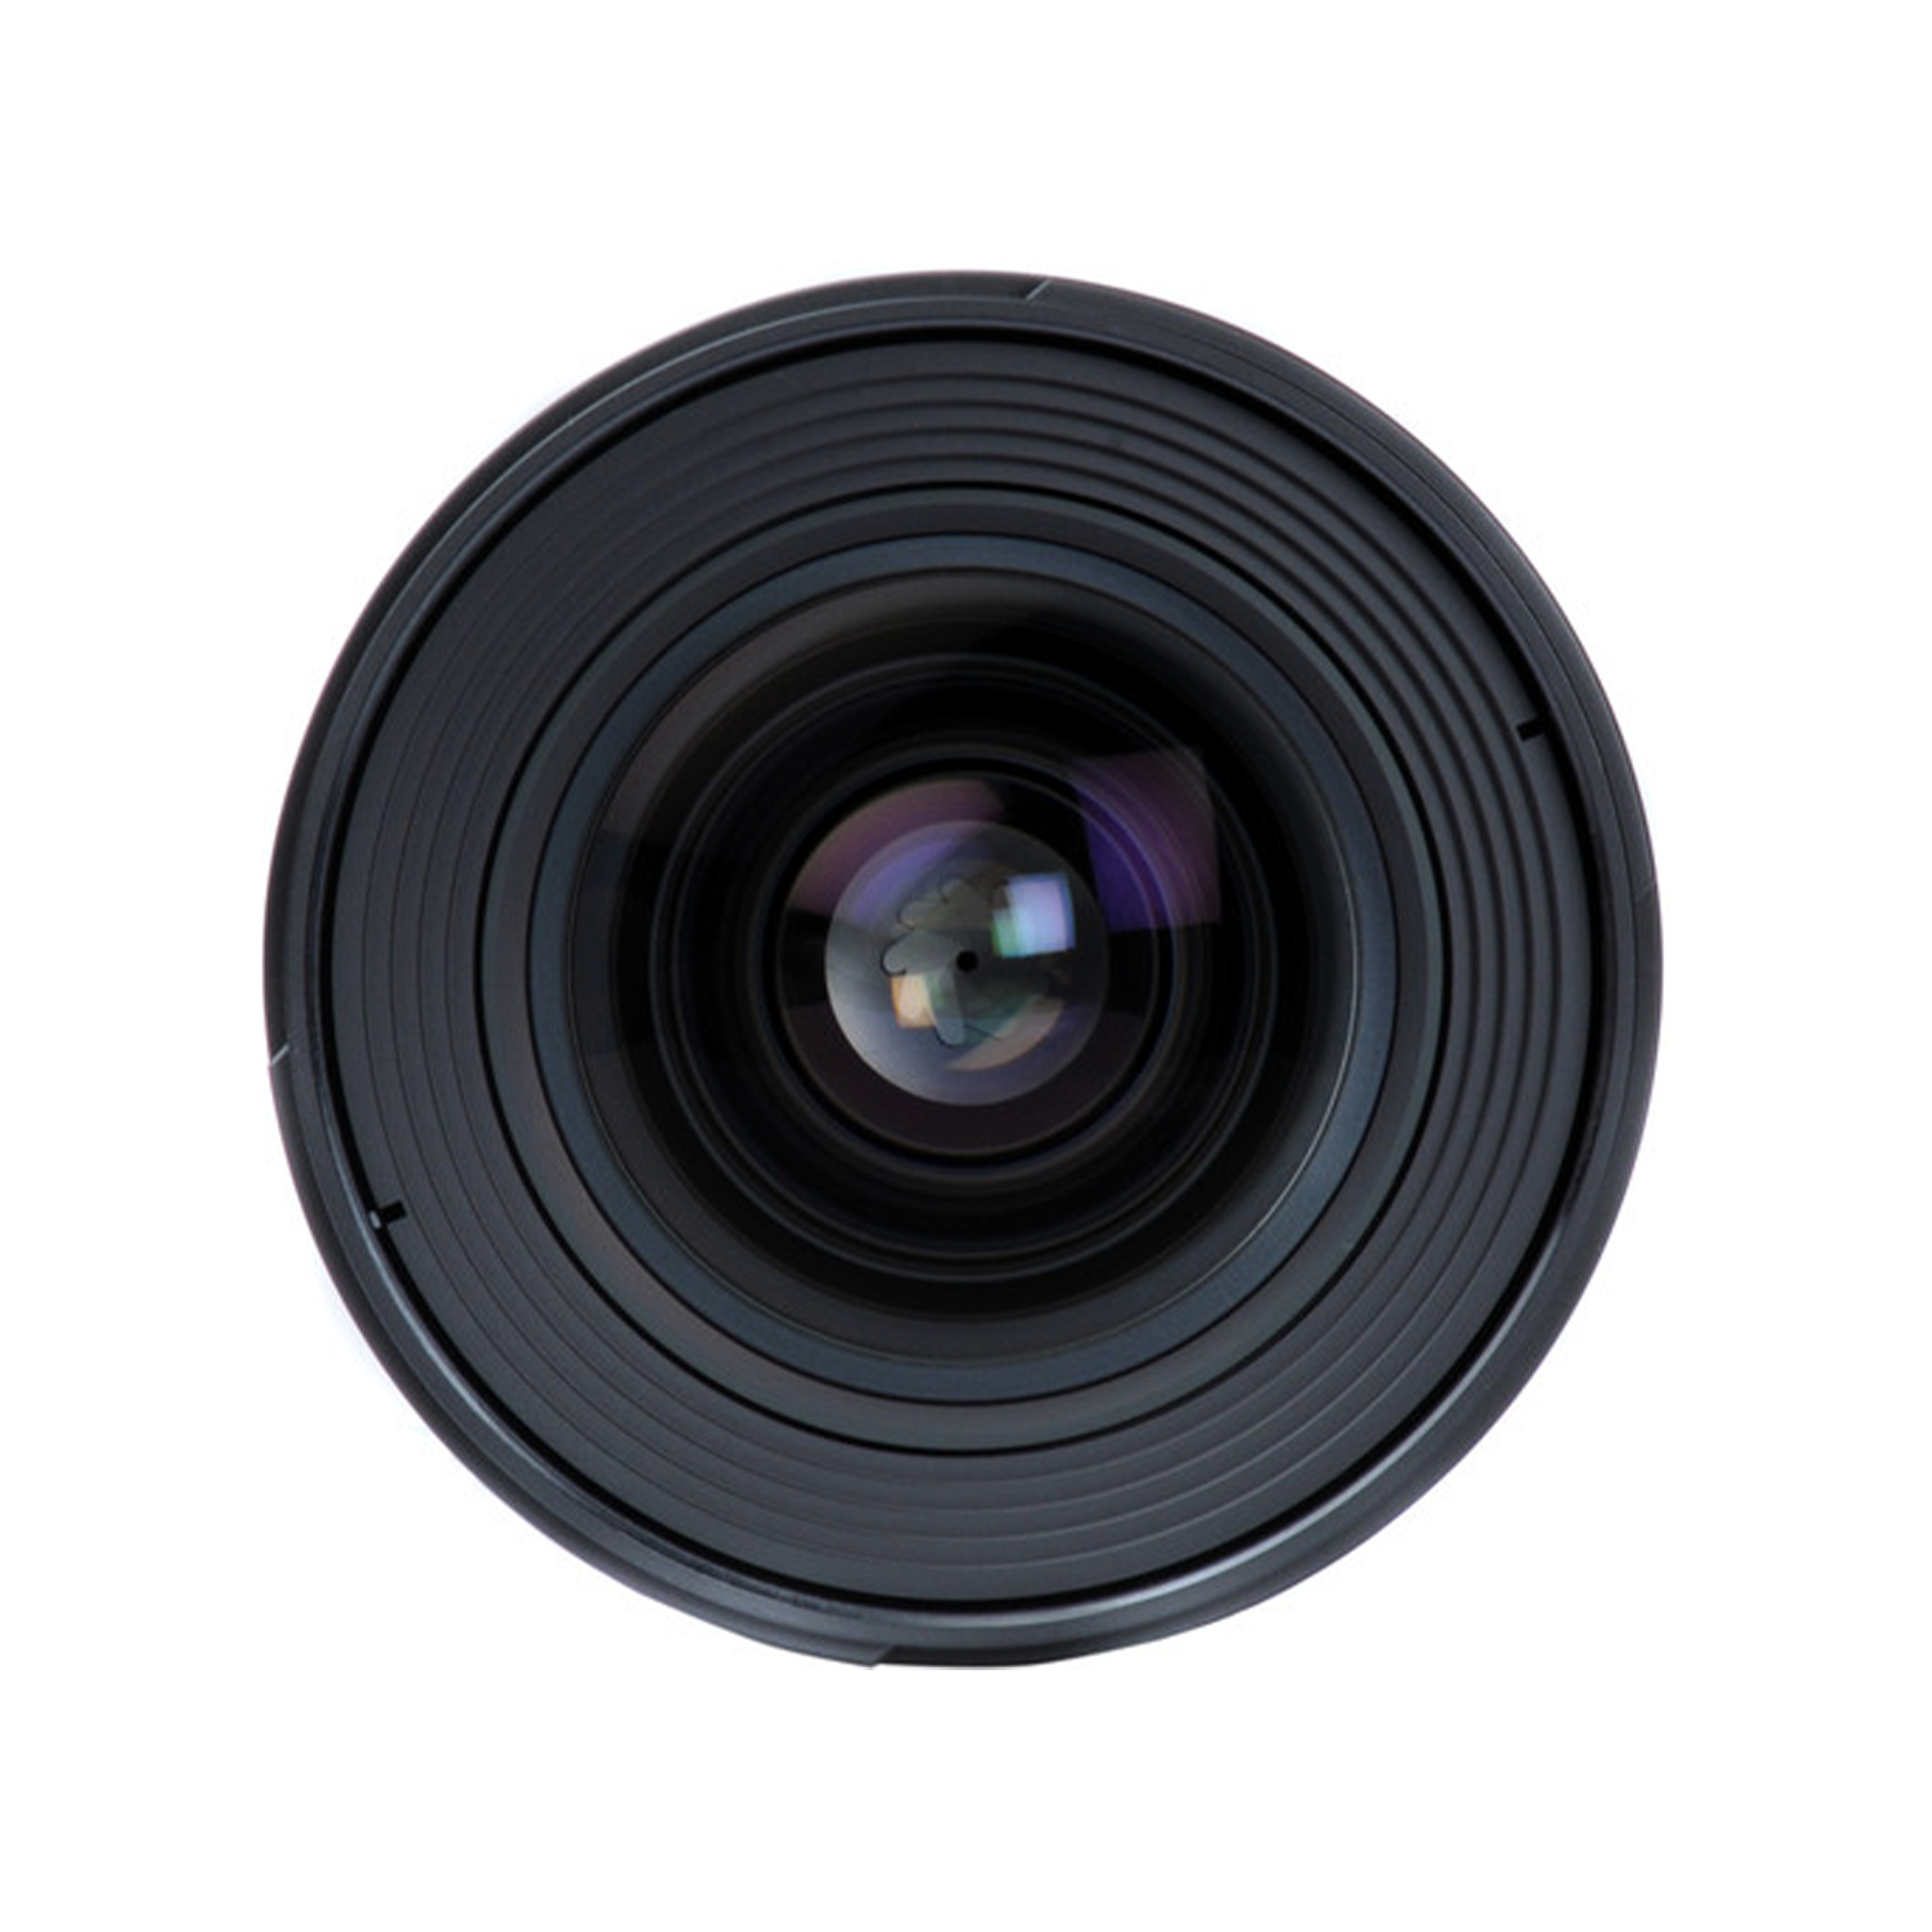 Nikon AF-S NIKKOR 24mm f/1.4G ED Lens-Camera Lenses-futuromic